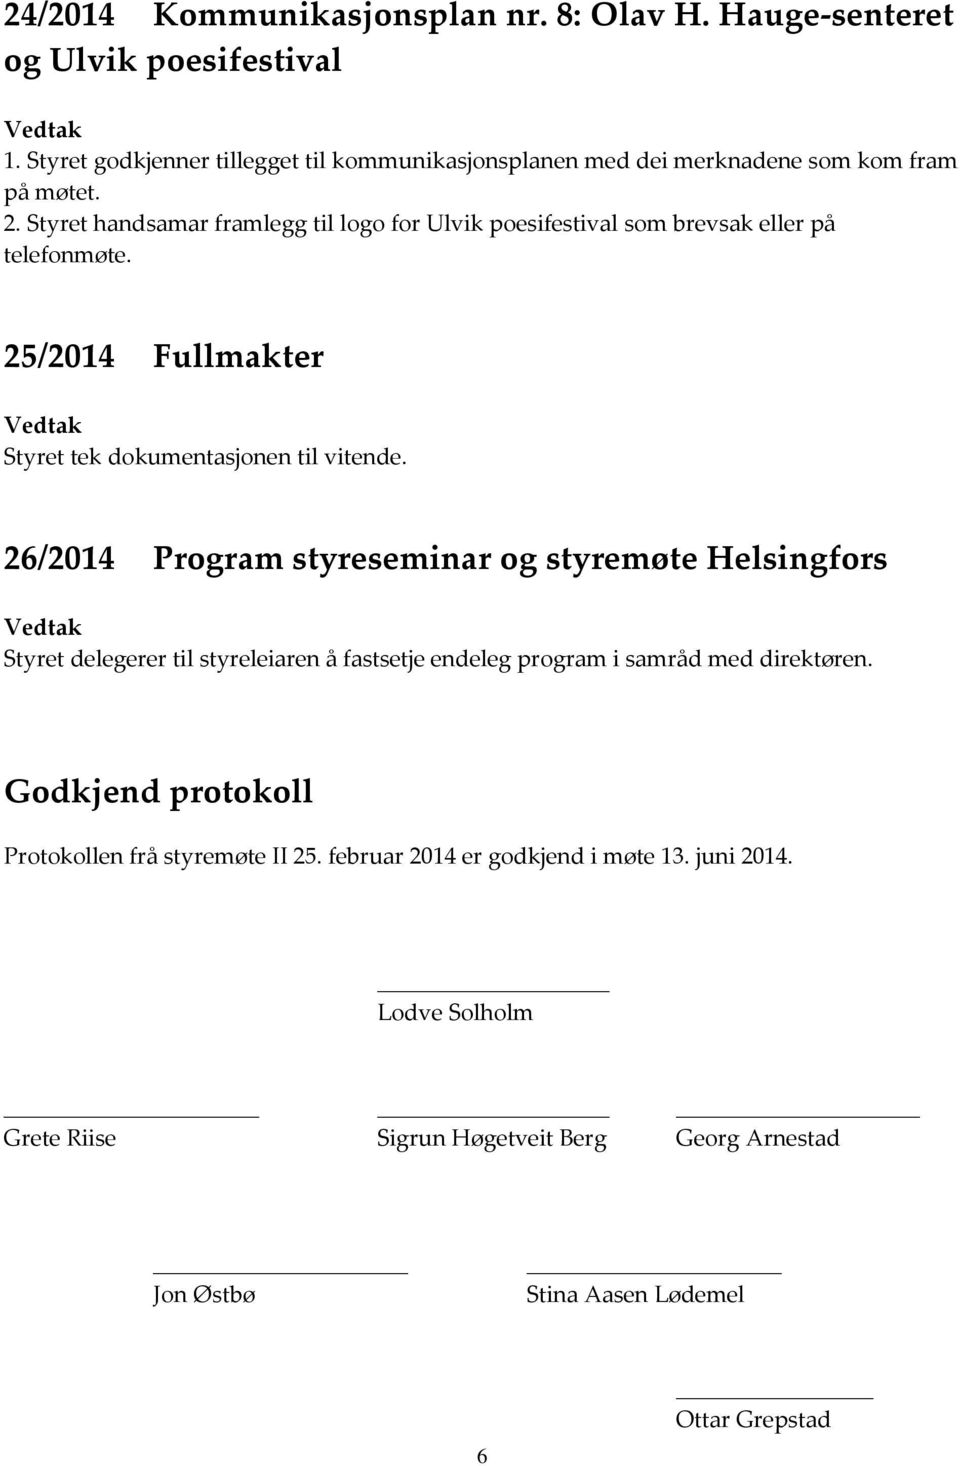 Styret handsamar framlegg til logo for Ulvik poesifestival som brevsak eller på telefonmøte. 25/2014 Fullmakter Styret tek dokumentasjonen til vitende.